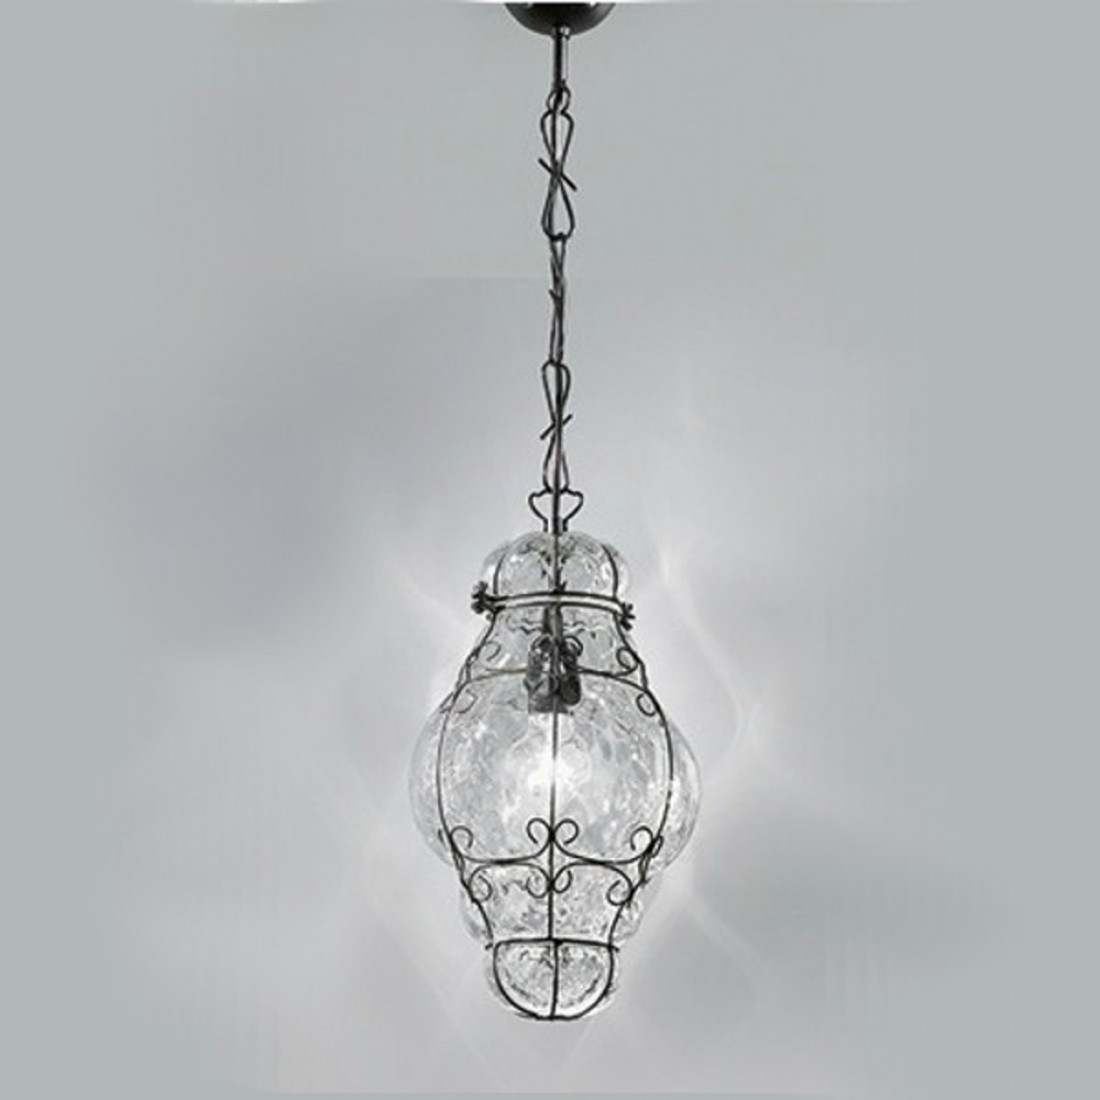 Suspension SY-TIEPOLO 1435 E27 LED INOX classique en acier soufflé lustre en verre de Murano à l'intérieur